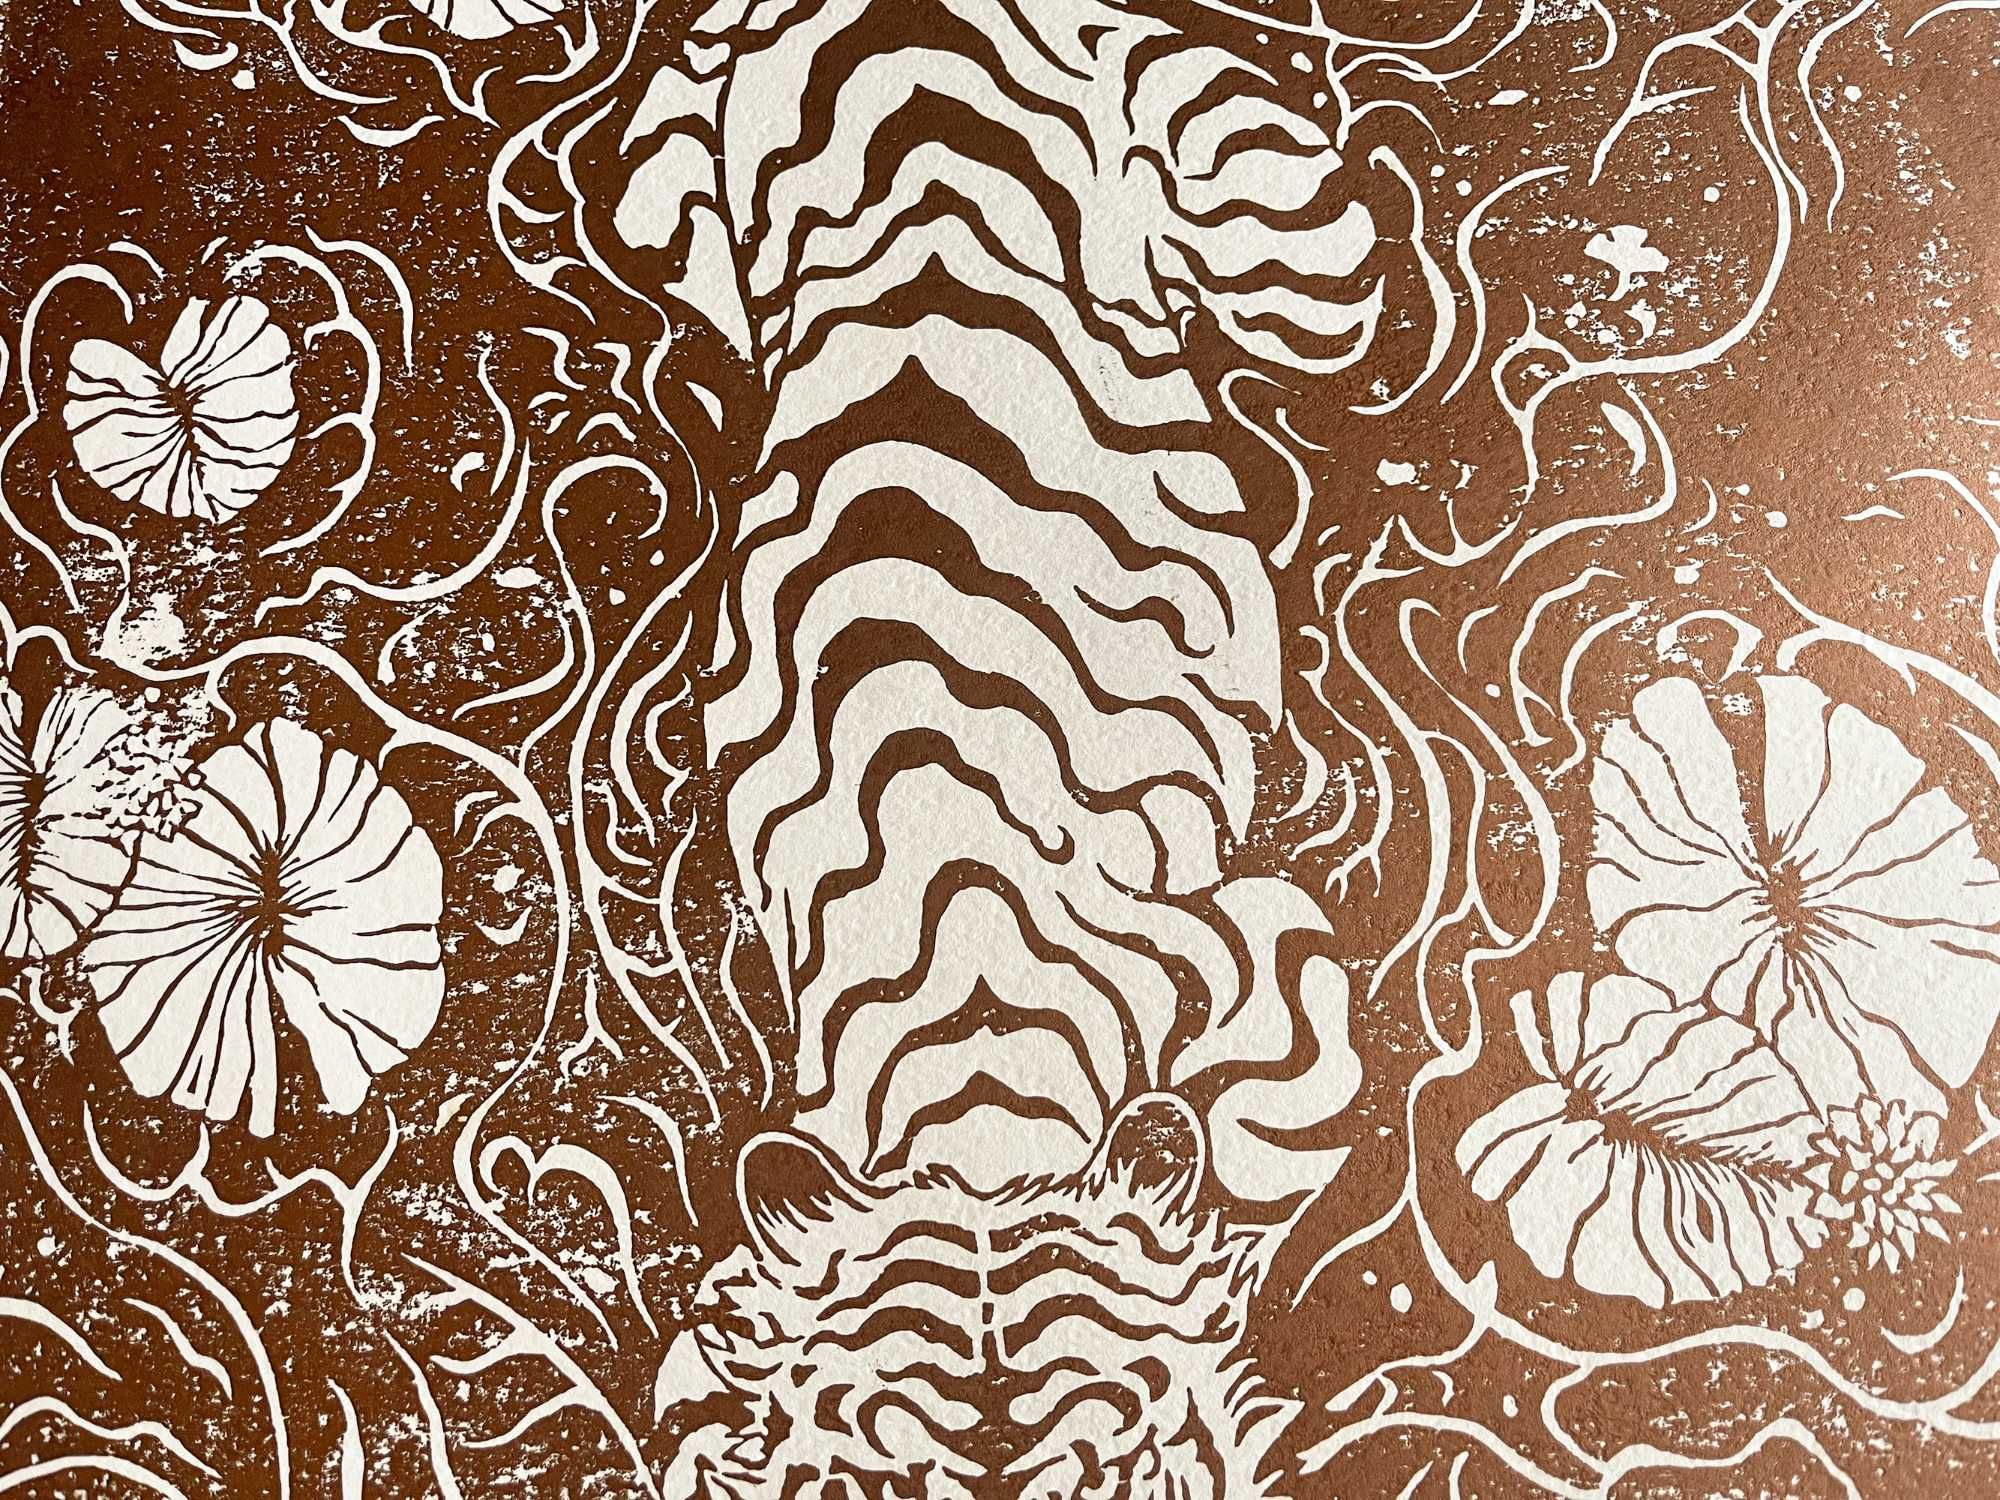 Sztuka Linoryt "Tygrys" ręczny druk miedź na papierze